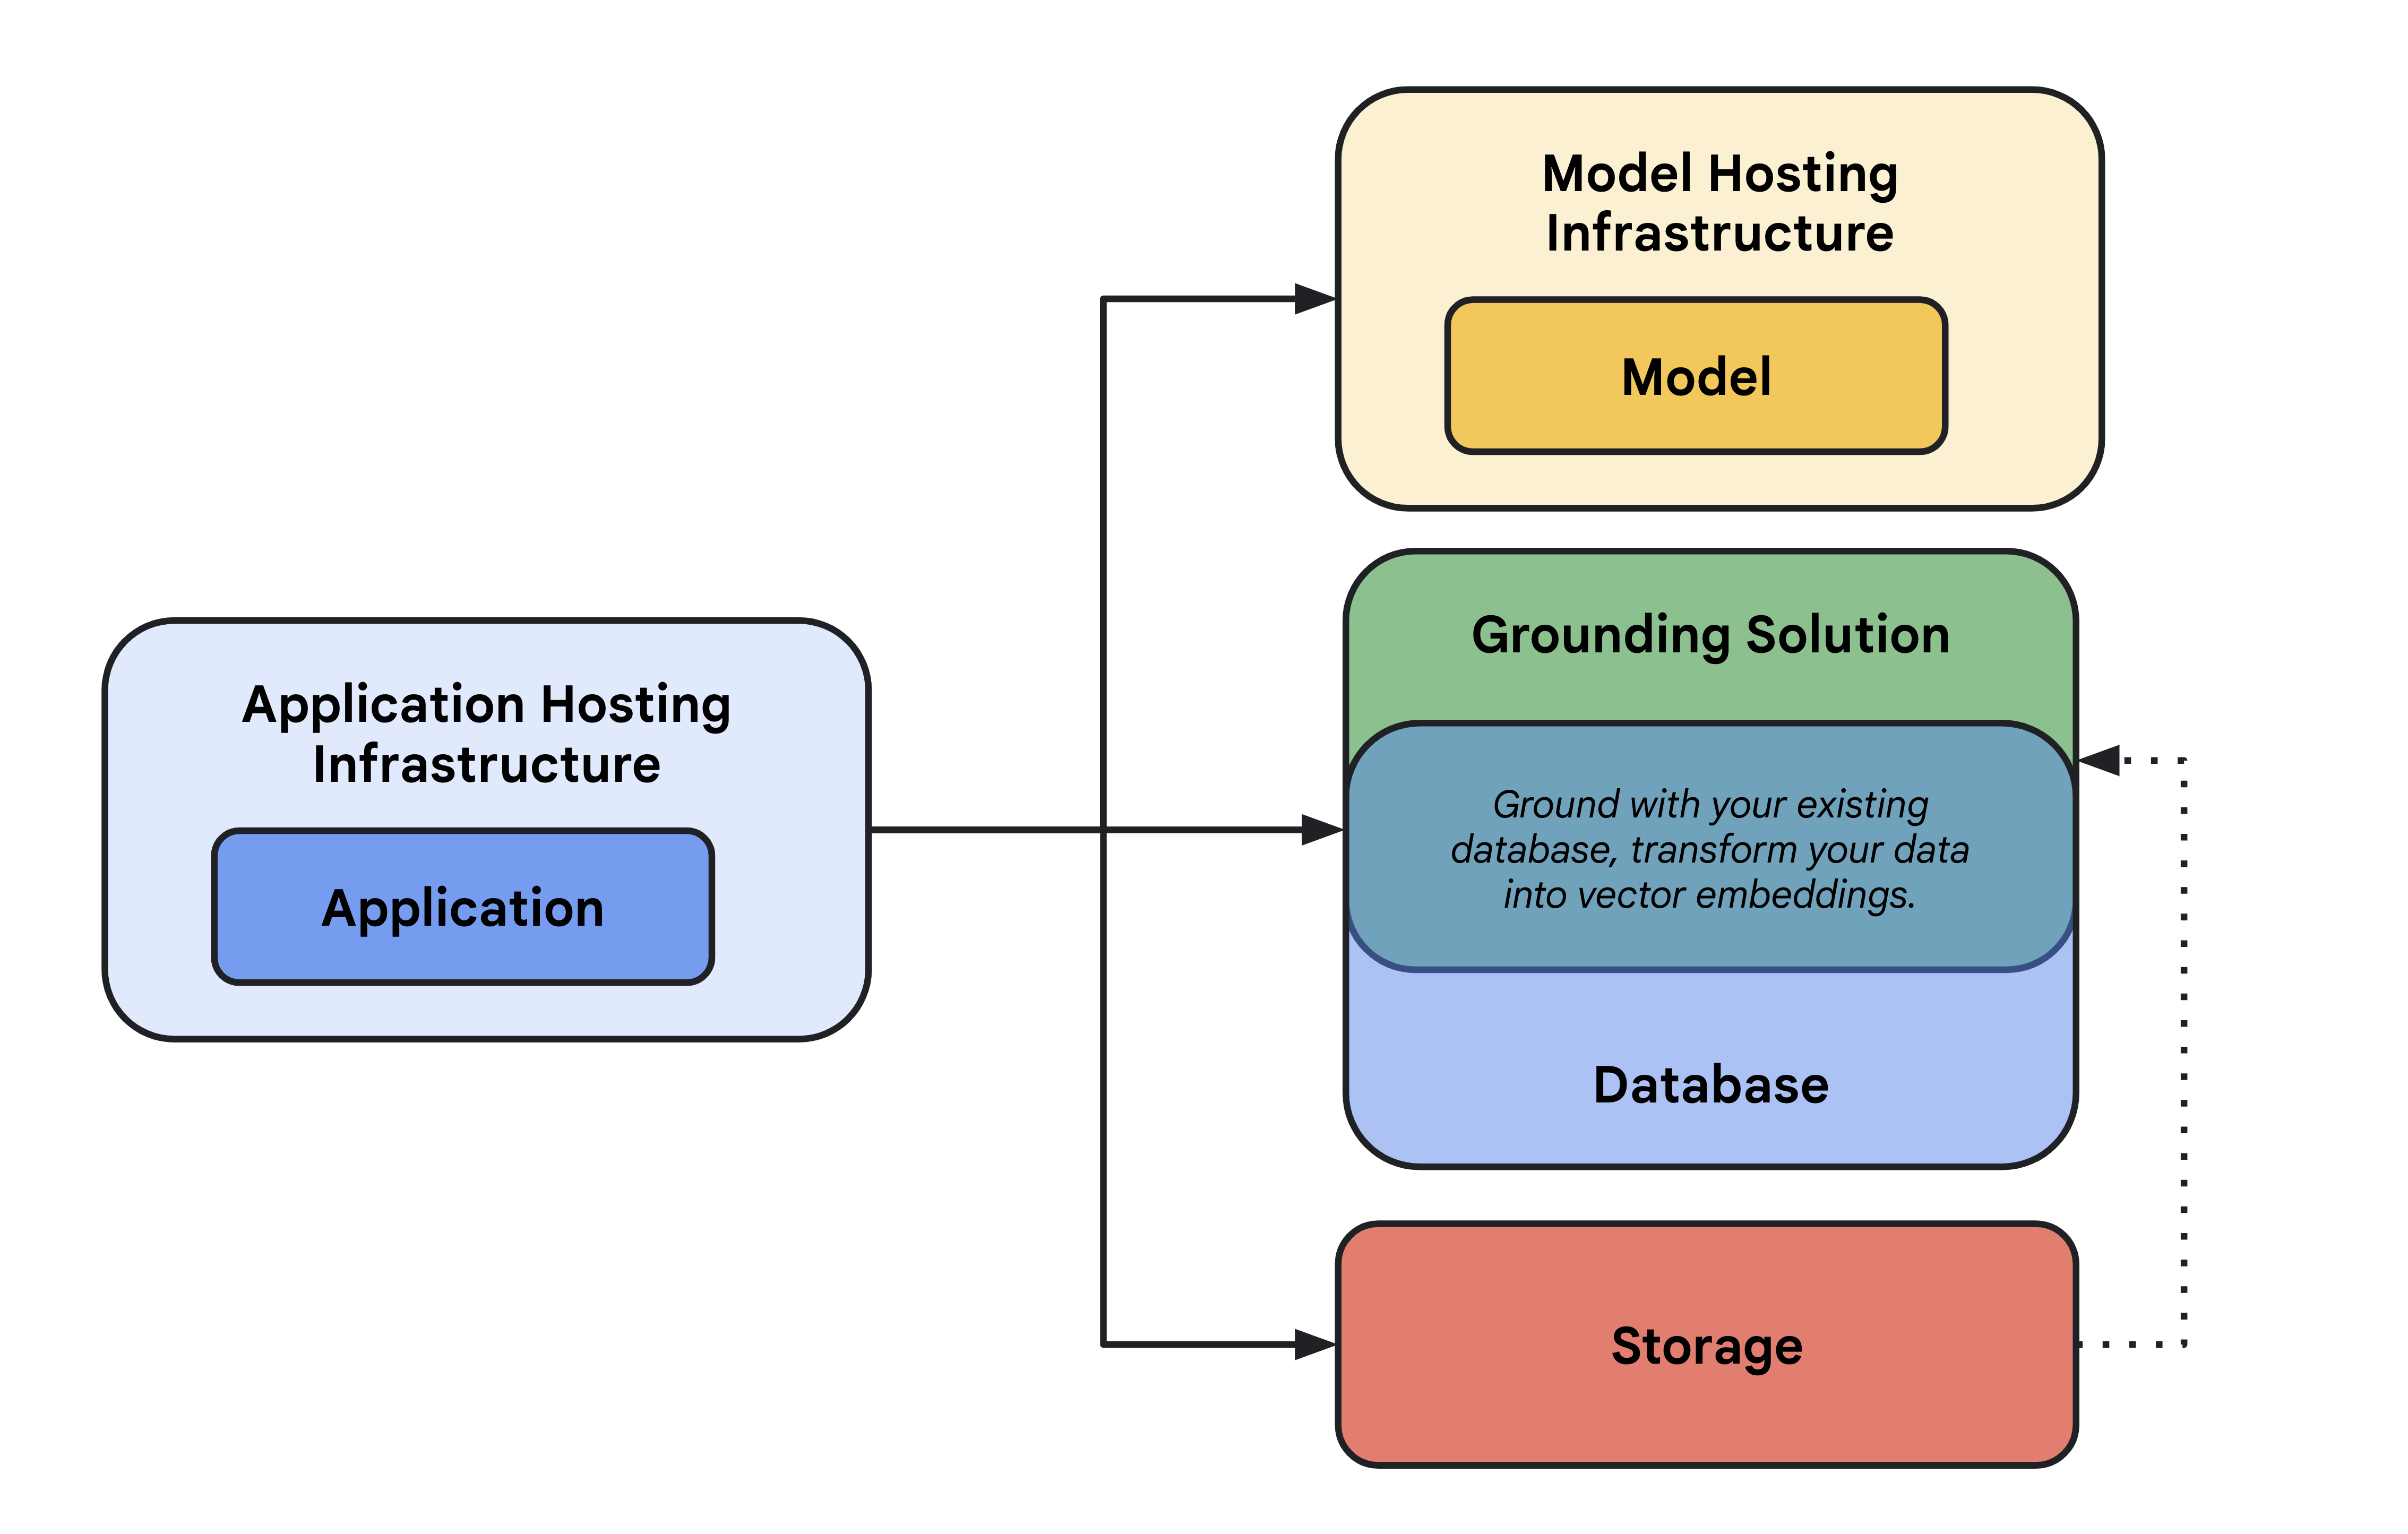 Diagramm mit einer allgemeinen Übersicht über eine KI-Anwendungshosting-Infrastruktur, einschließlich eines Modells und seiner Modellhosting-Infrastruktur, Fundierungslösung, Datenbank, Speicher und Anwendungshosting.